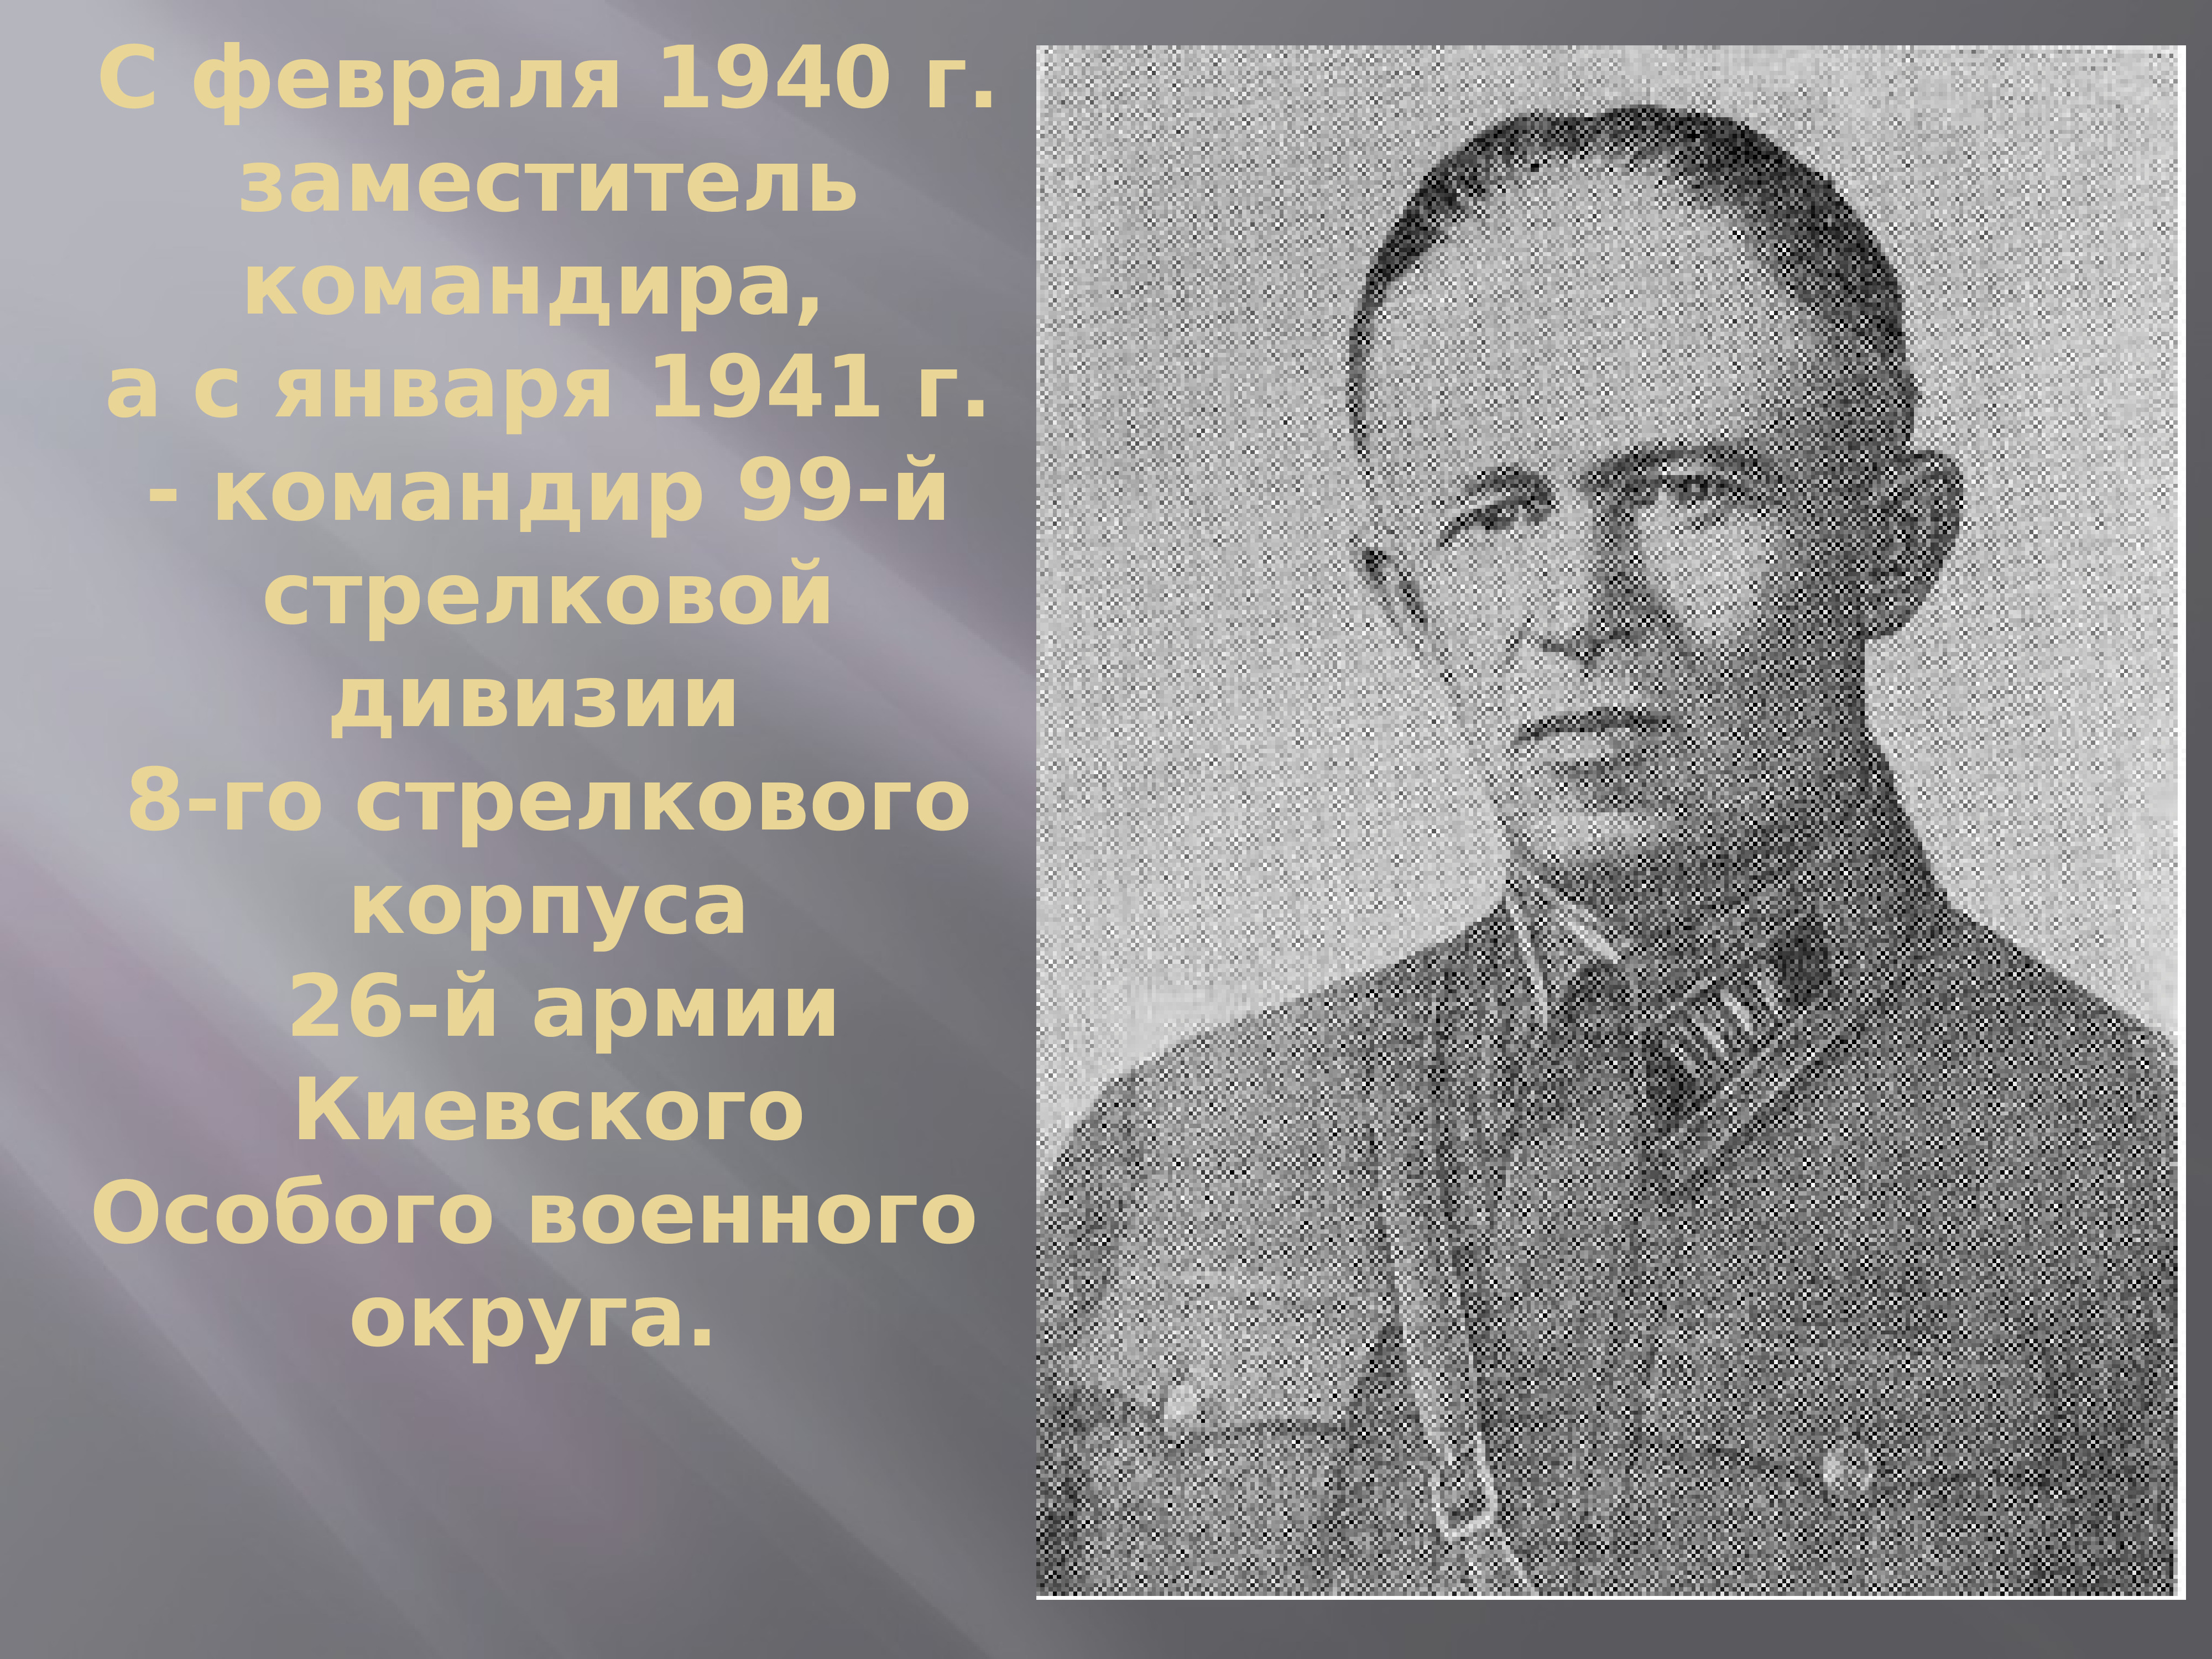 Дементьев Николай Иванович генерал-майор